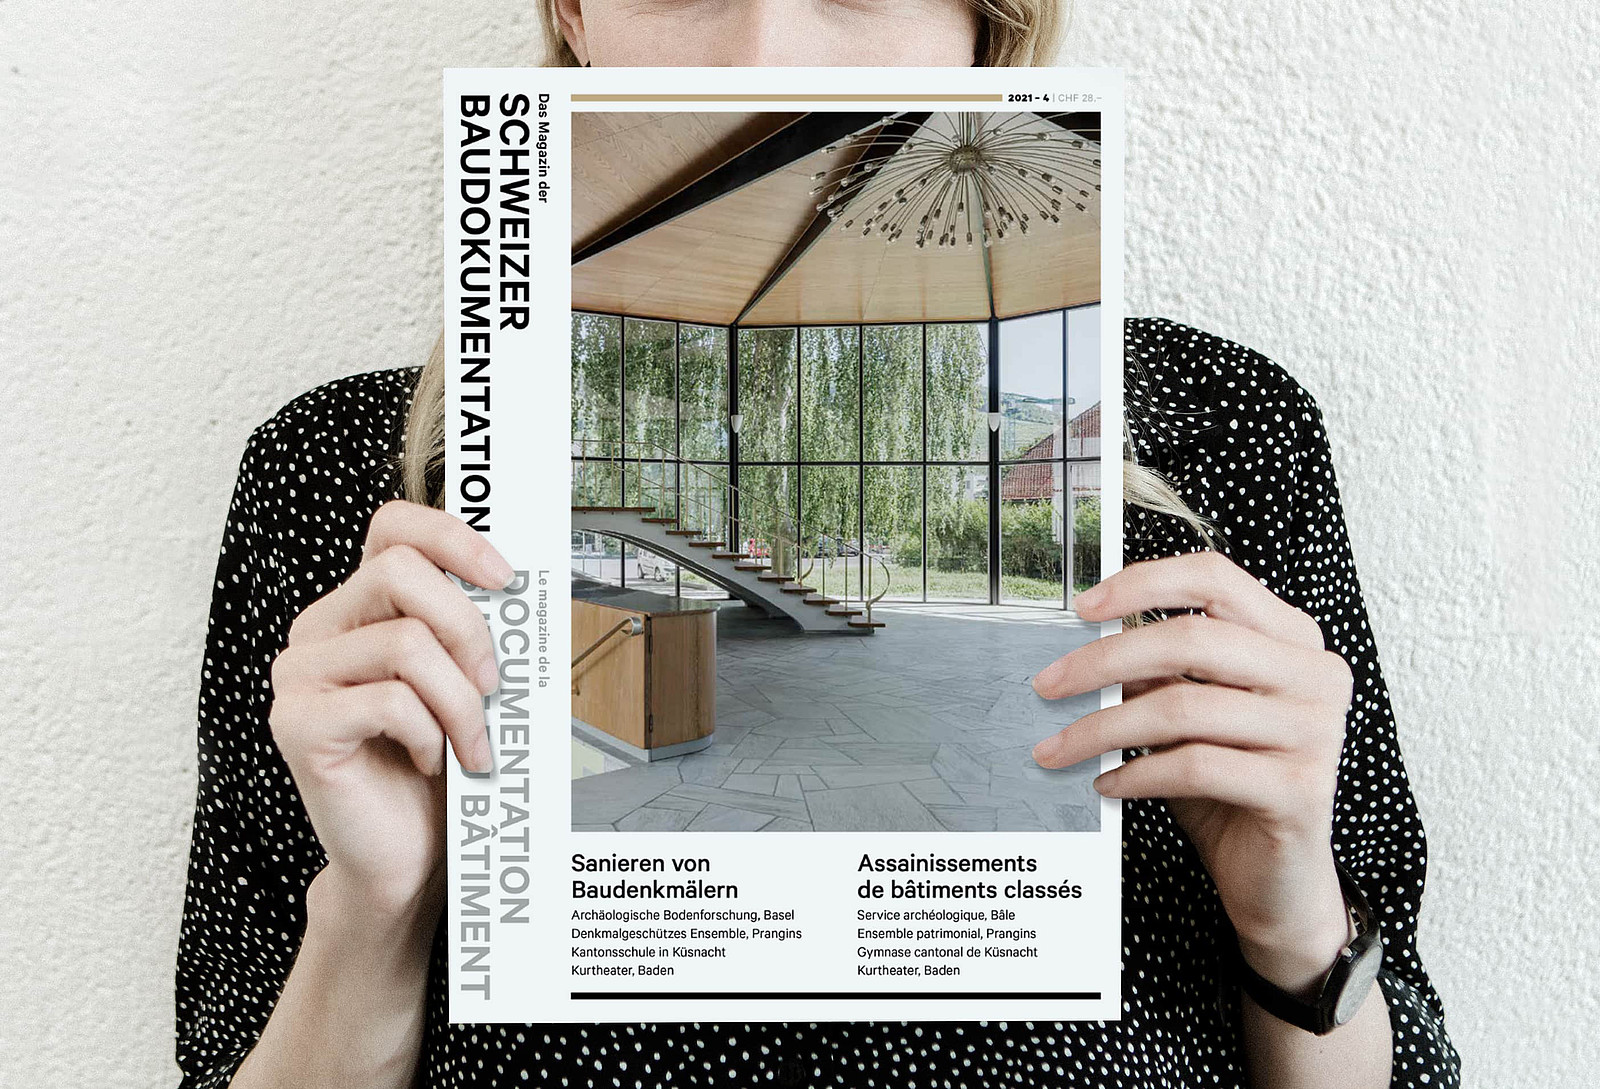 Eine Ausgabe des «Magazins der Schweizer Baudokumentation» zum Thema «Sanieren von Baudenkmälern» neben einer folierten Ausgabe zum Thema «Kliniken und Spitäler»